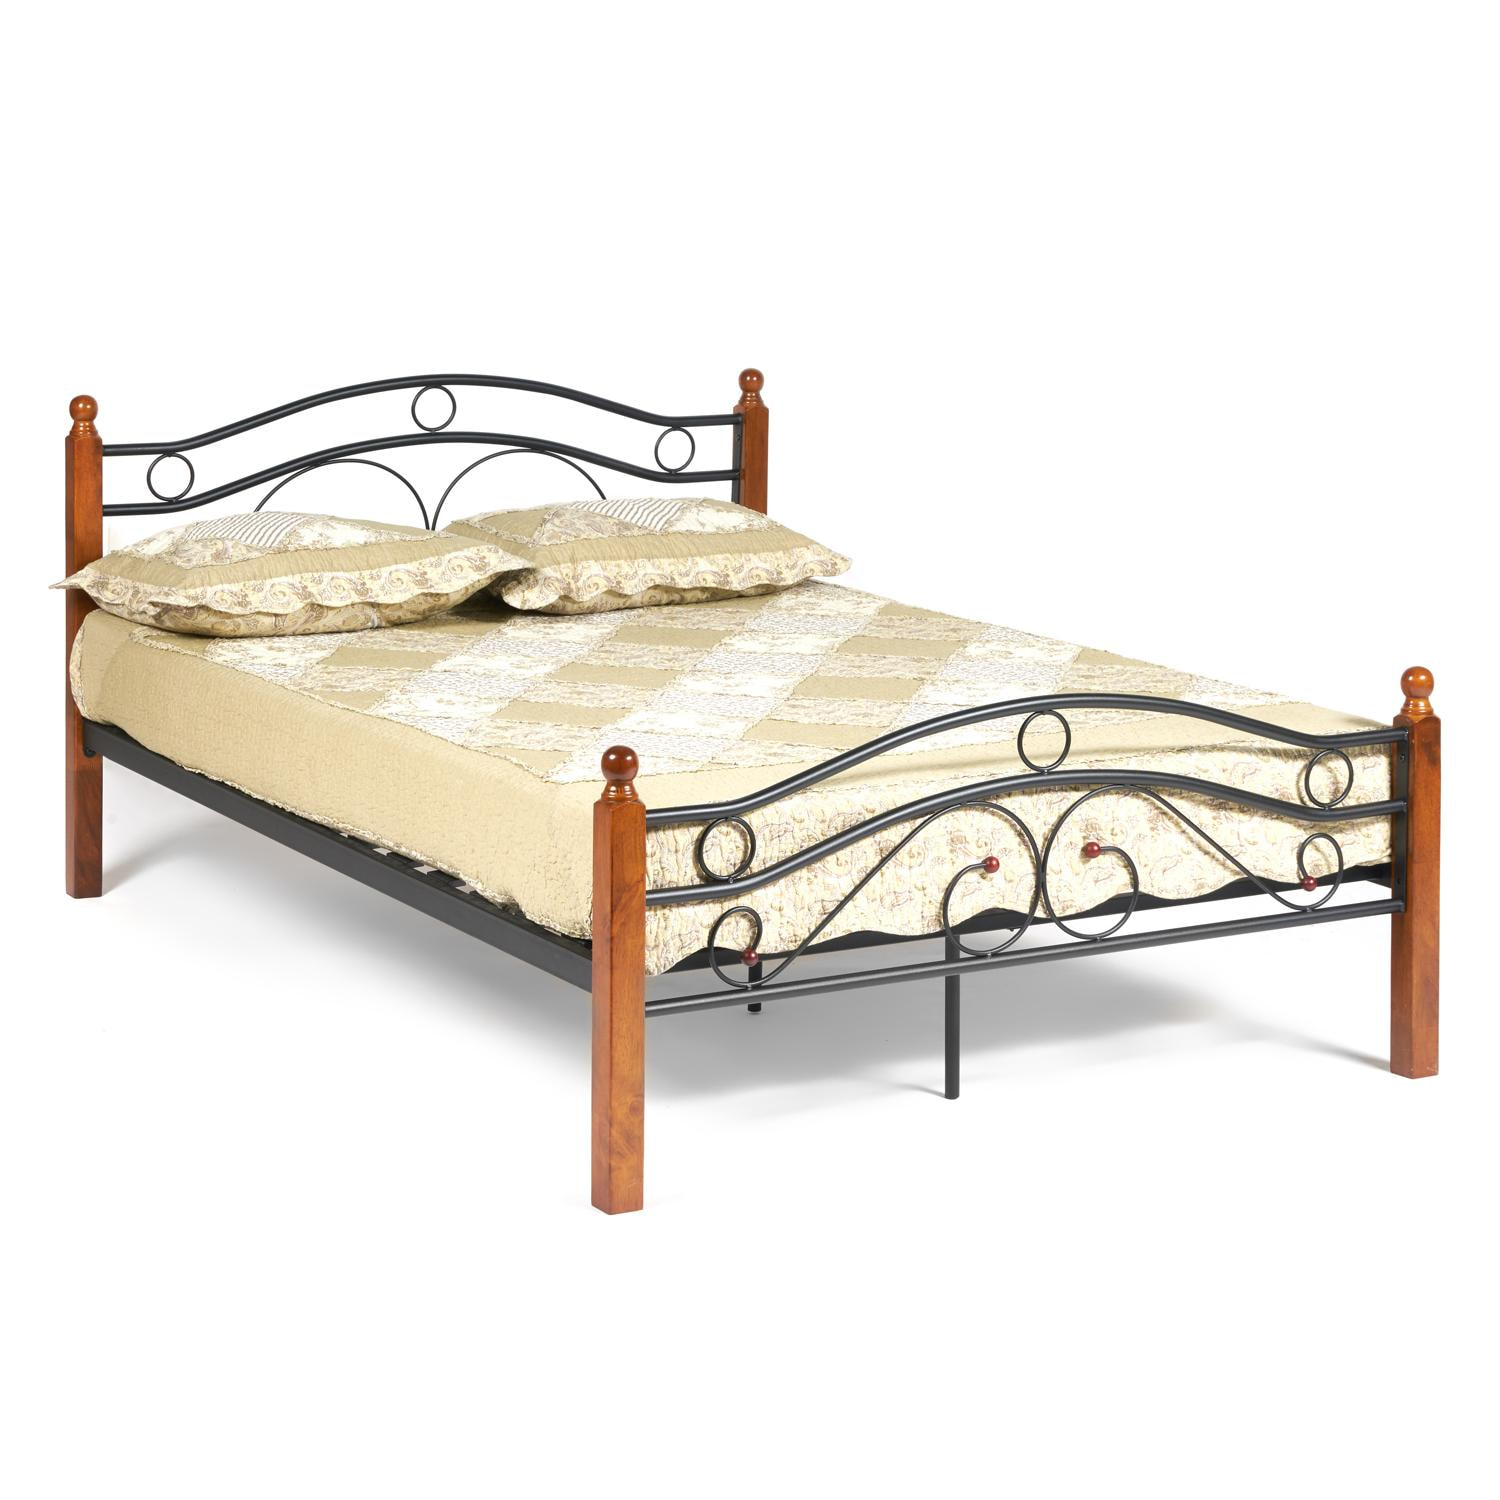 Кровать AT-803 Wood slat base дерево гевея/металл, 120*200 см (middle bed), красный дуб/черный